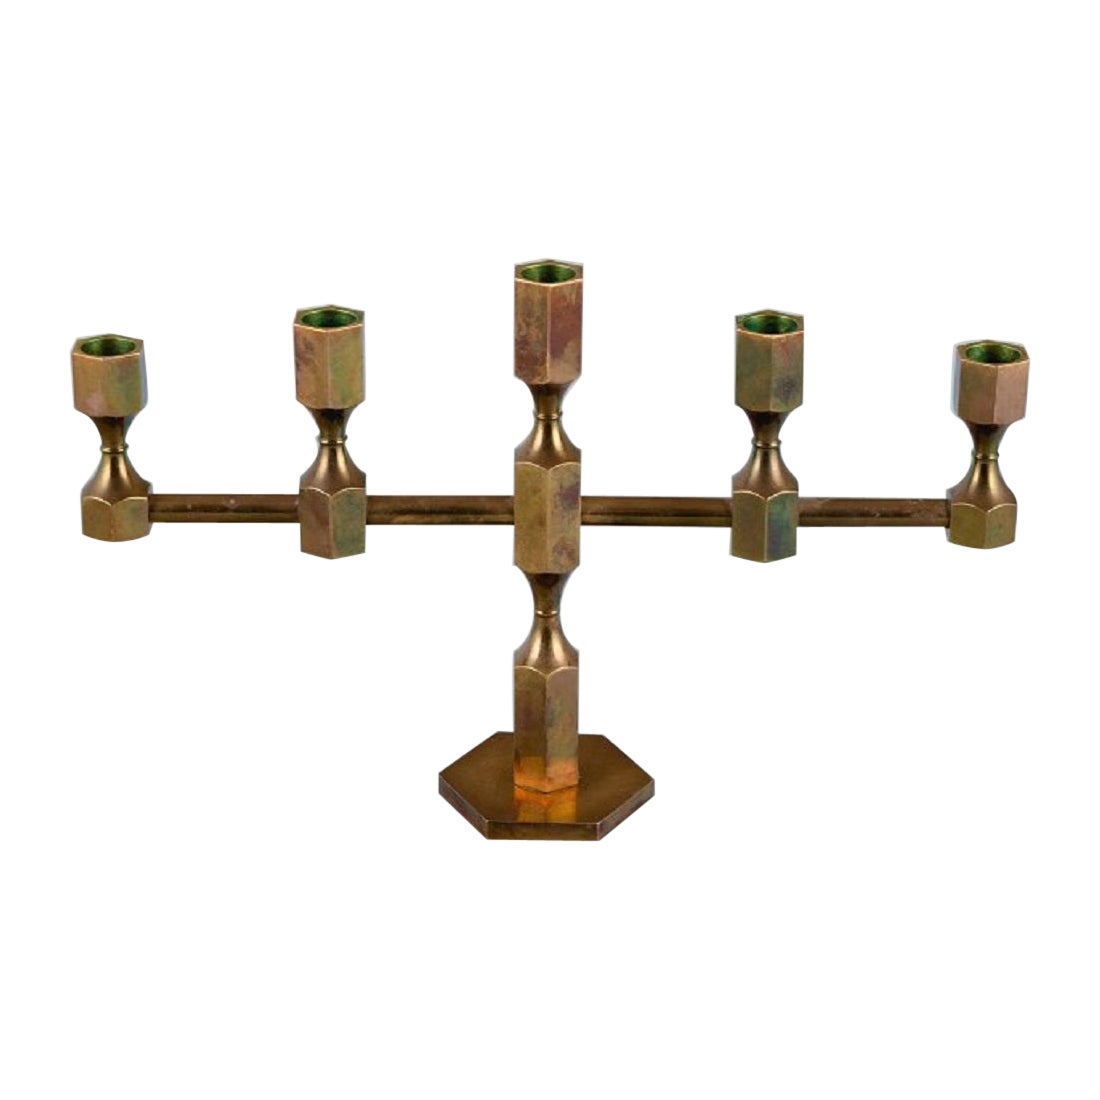 Gusum, Metallslöjd, Brass Candlestick for Five Candles, Swedish Design For Sale